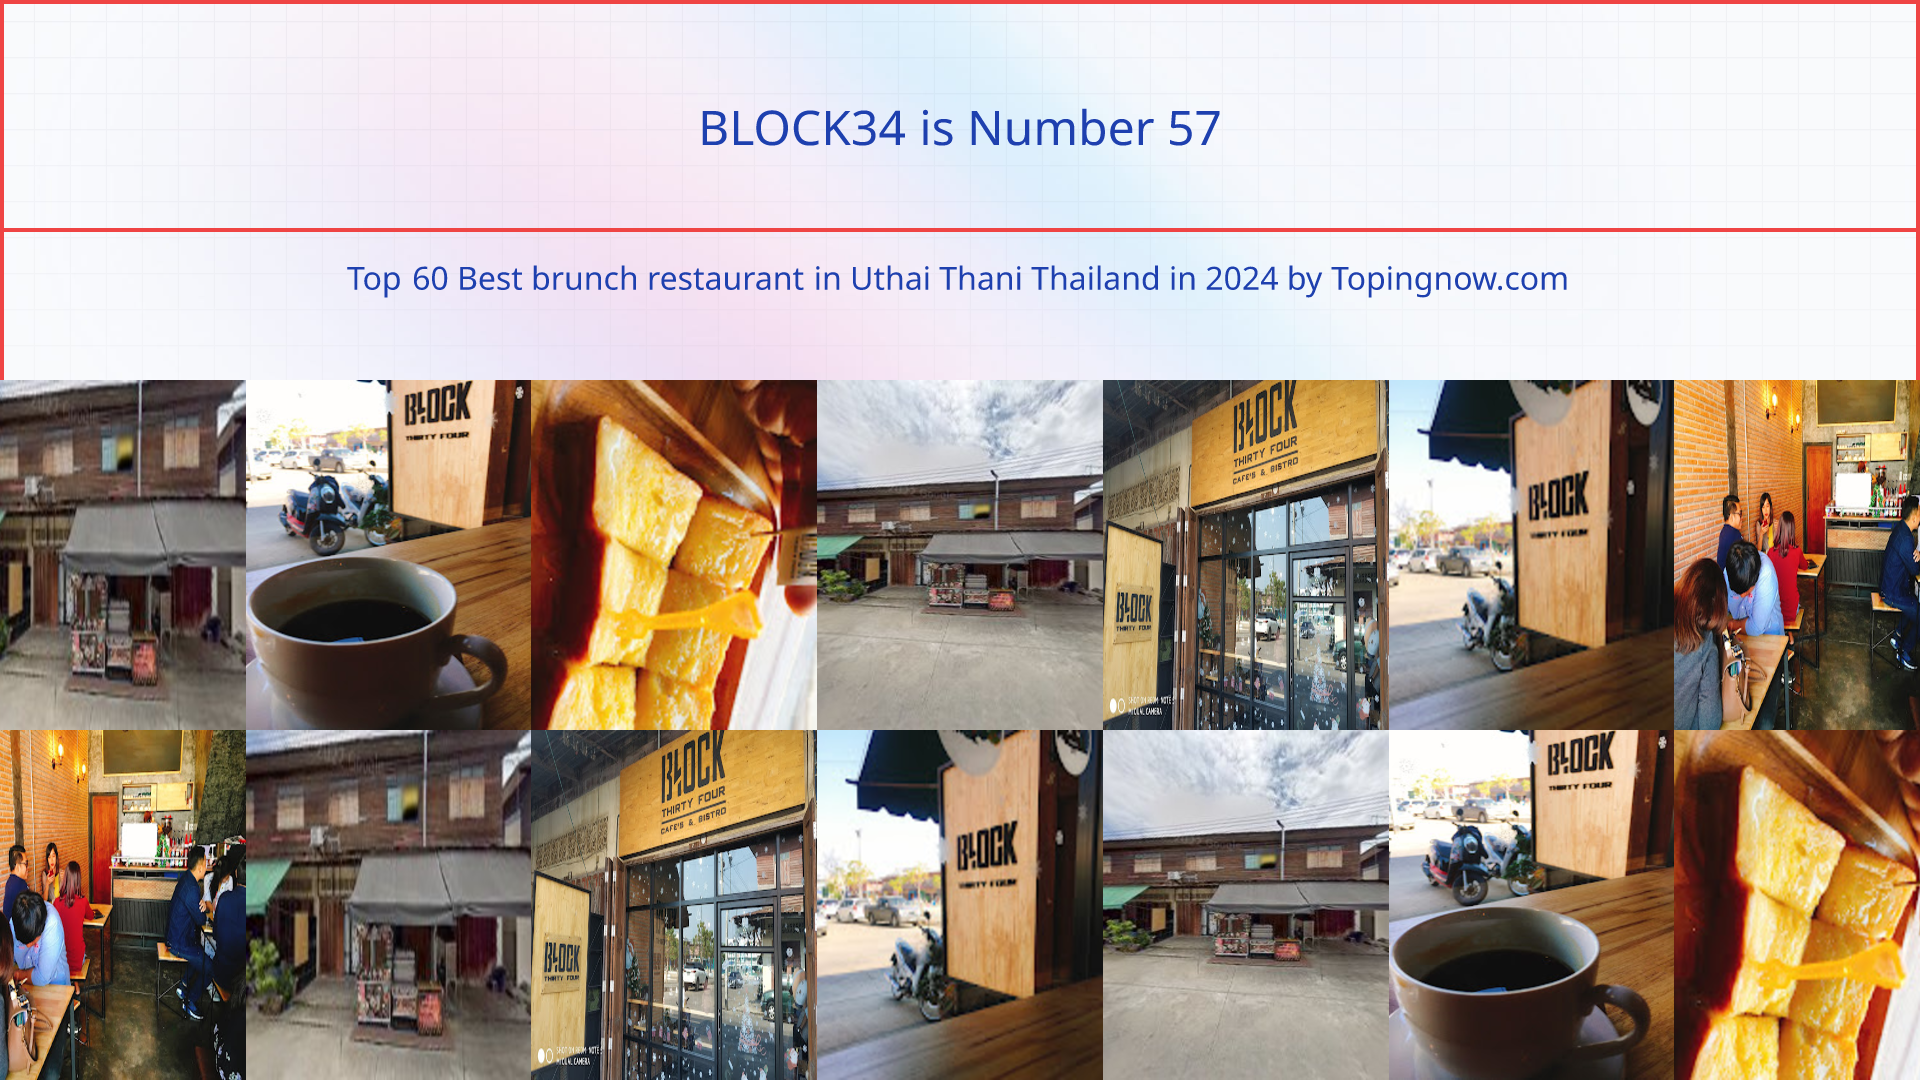 BLOCK34: Top 60 Best brunch restaurant in Uthai Thani Thailand in 2024